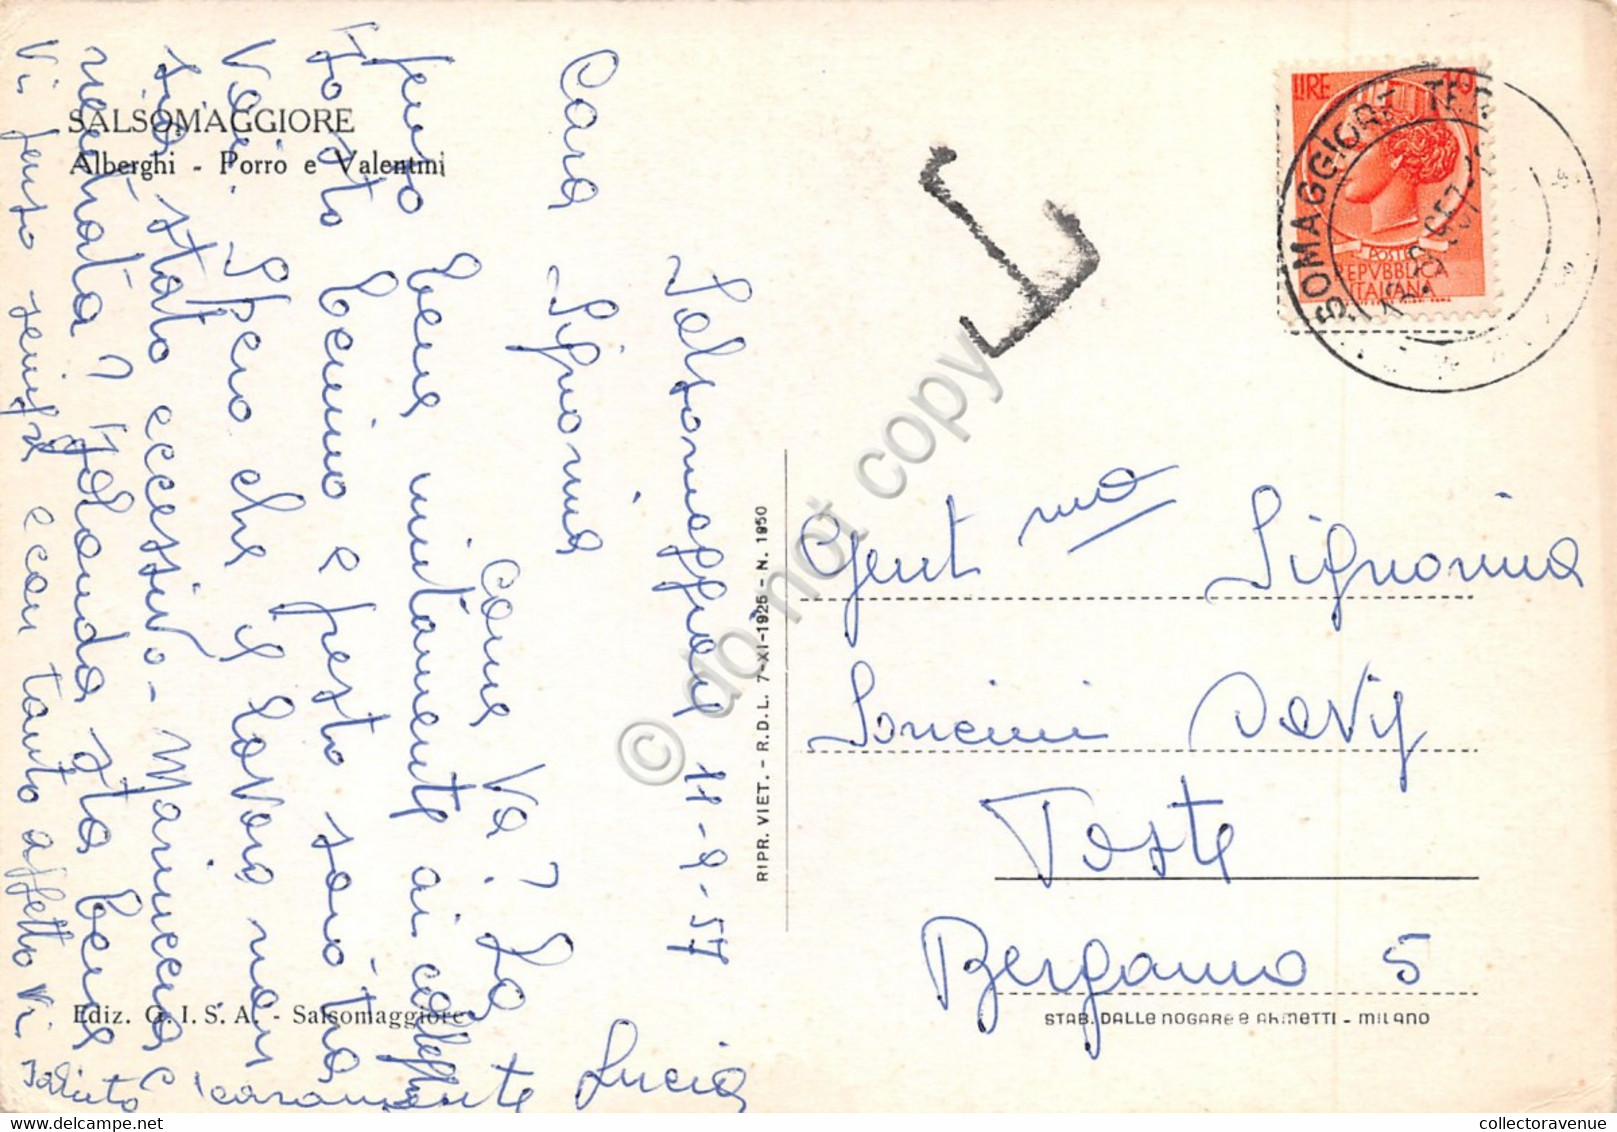 Cartolina Salsomaggiore Alberghi Porro E Valentini 1957 Tassata (Parma) - Parma